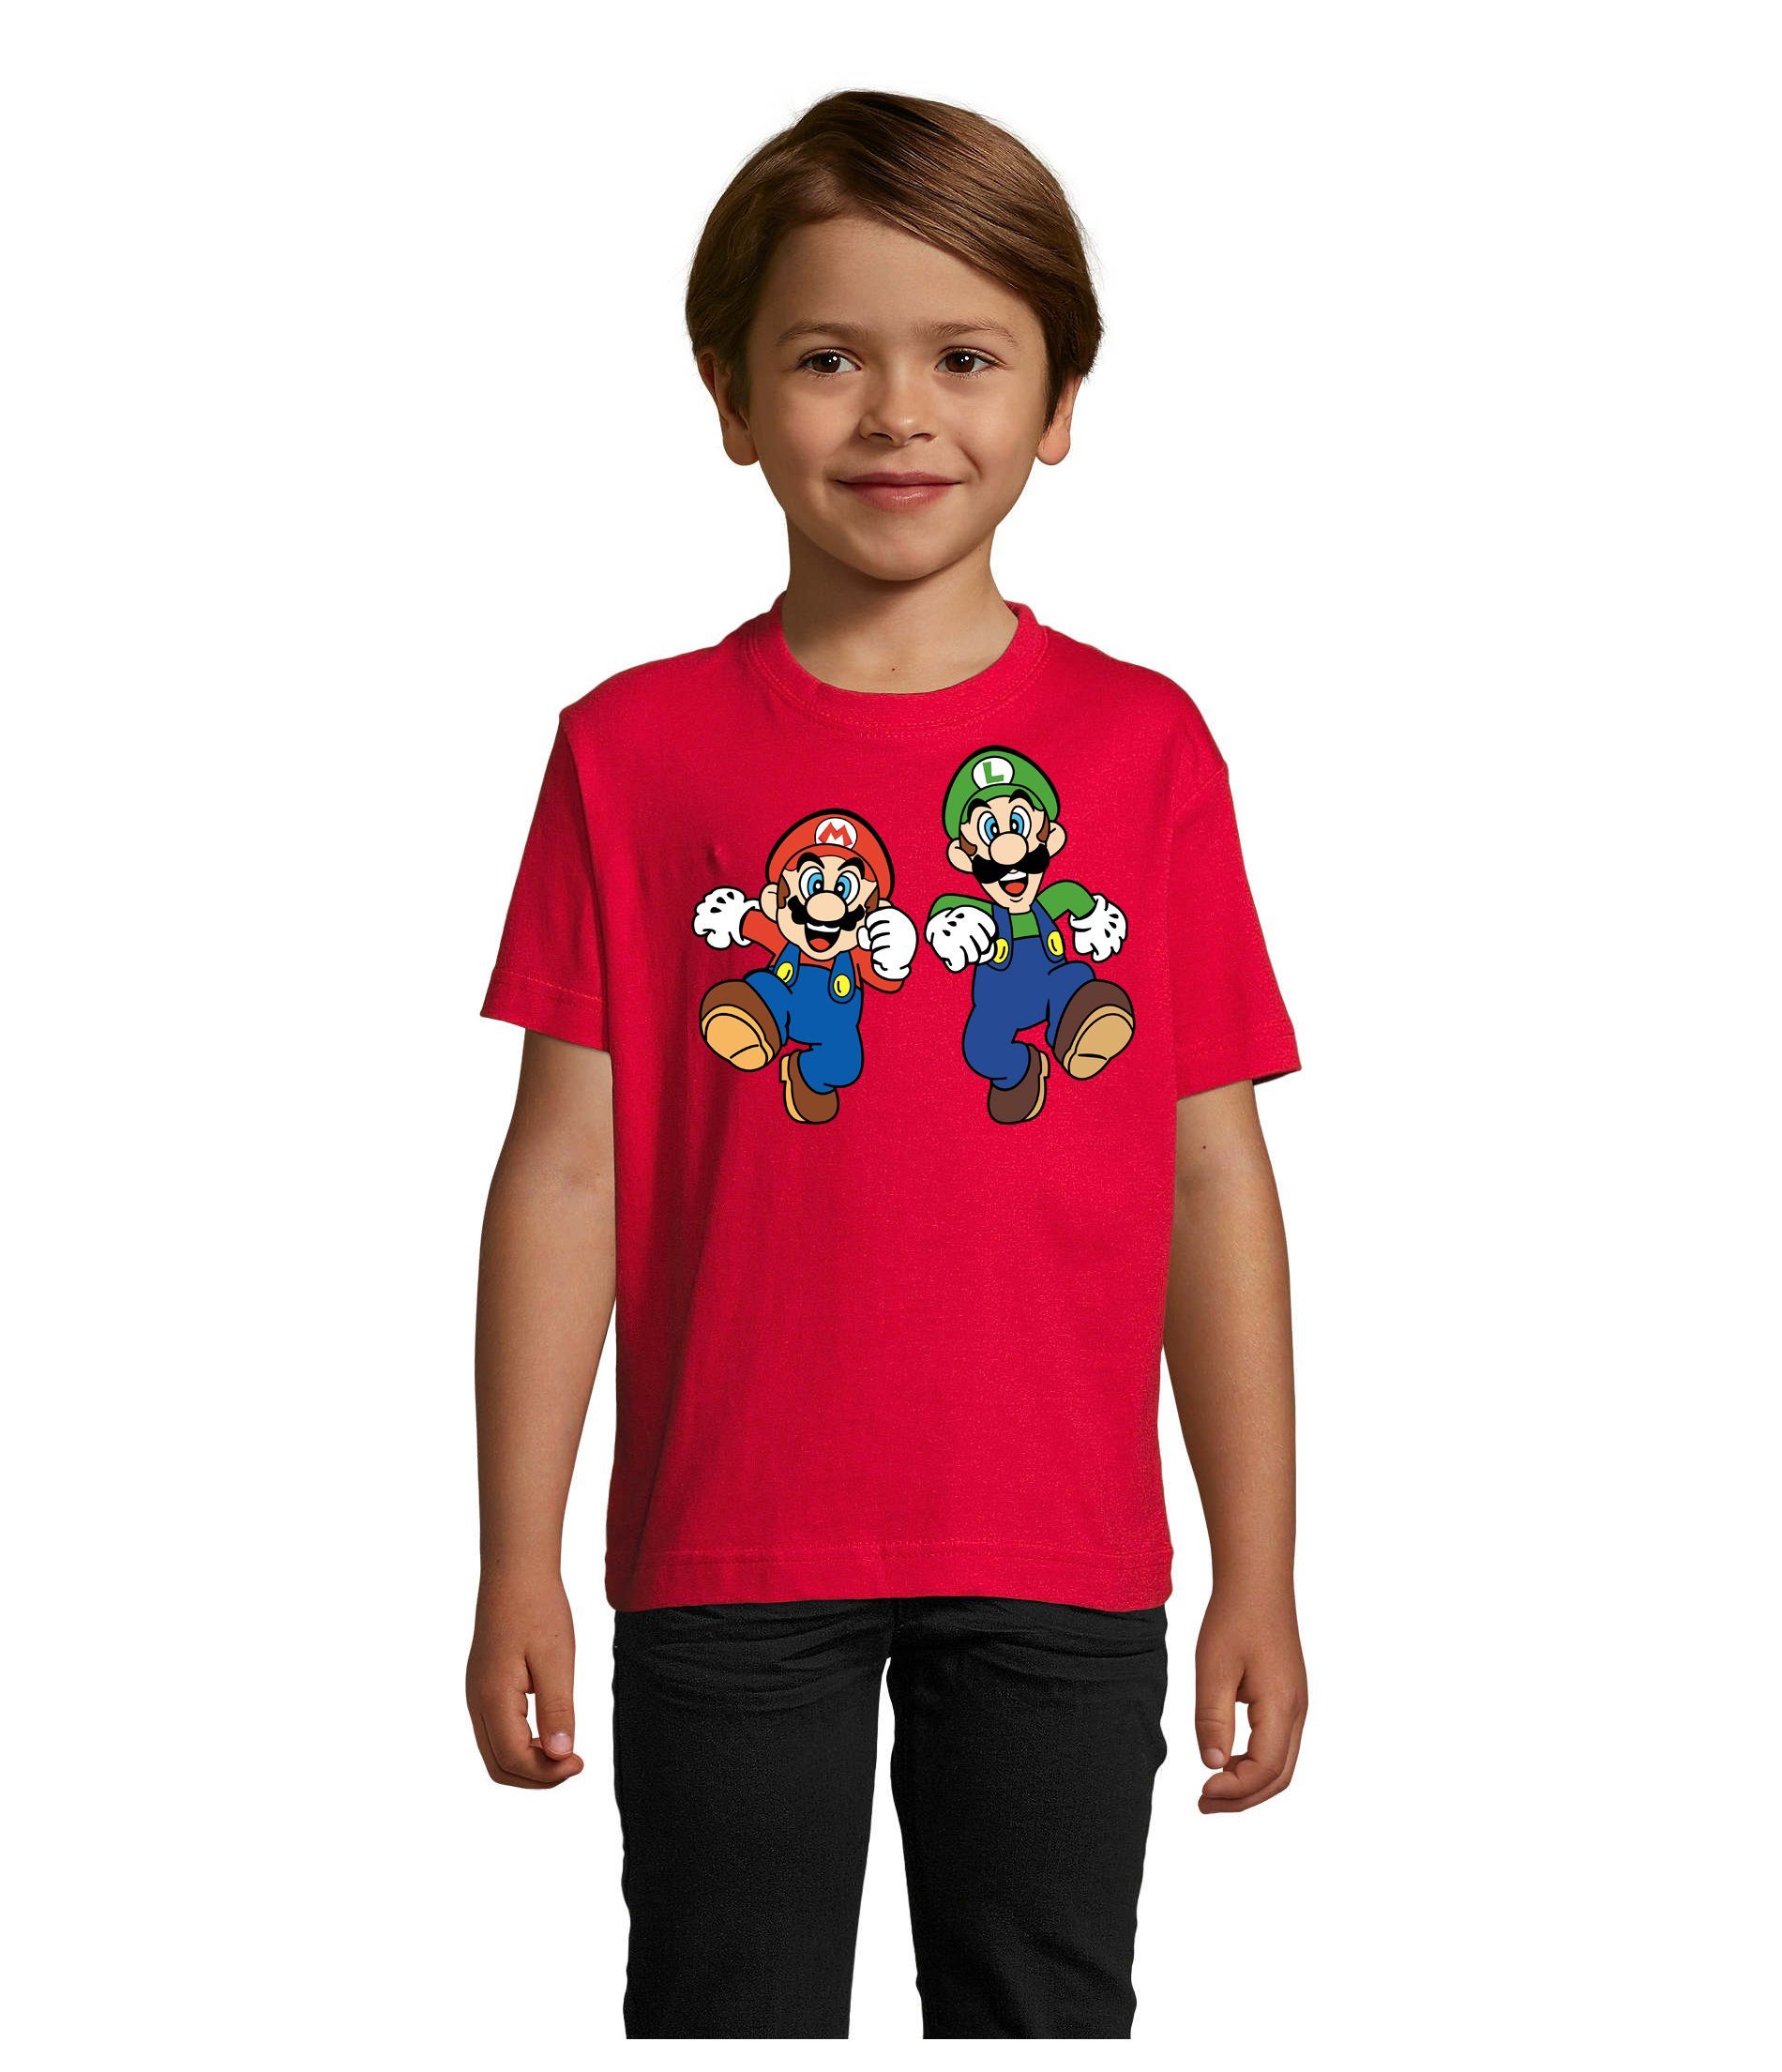 & Mario T-Shirt Kinder Blondie Brownie Gamer Rot Bowser & Yoshi Luigi Nintendo Game Konsole